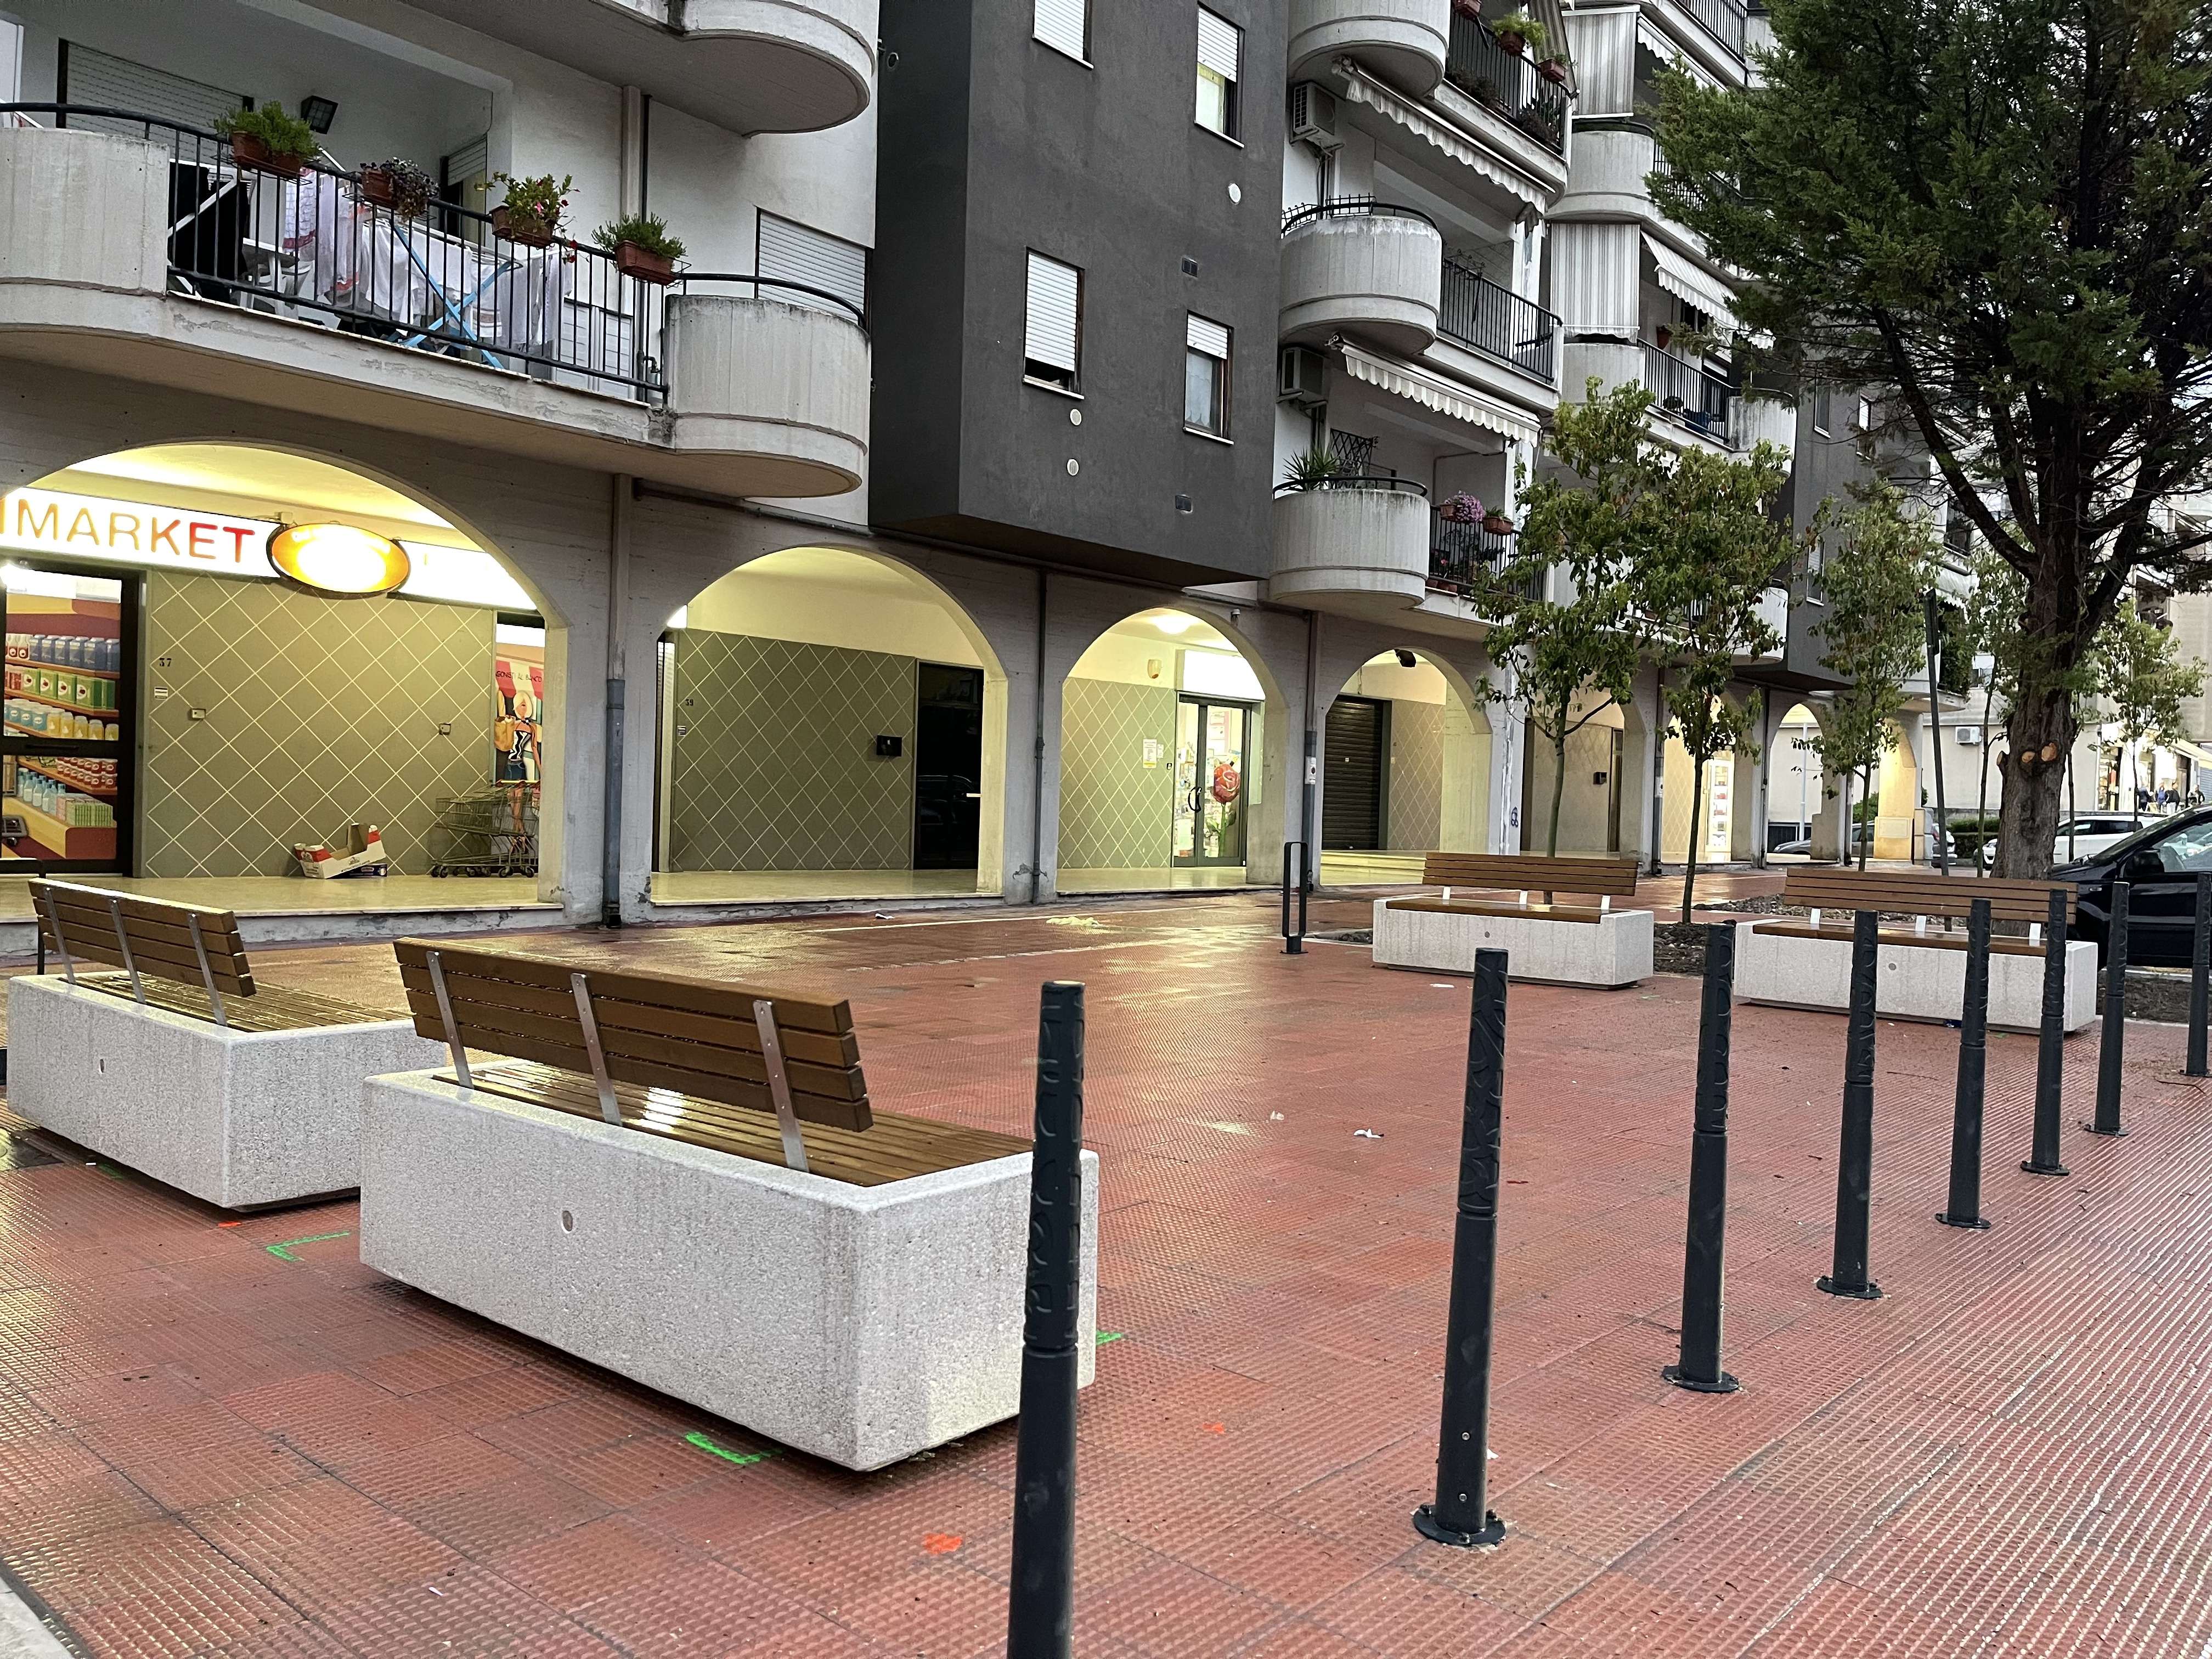 Conclusi i lavori di riqualificazione urbana di via Falcone e via La Malfa